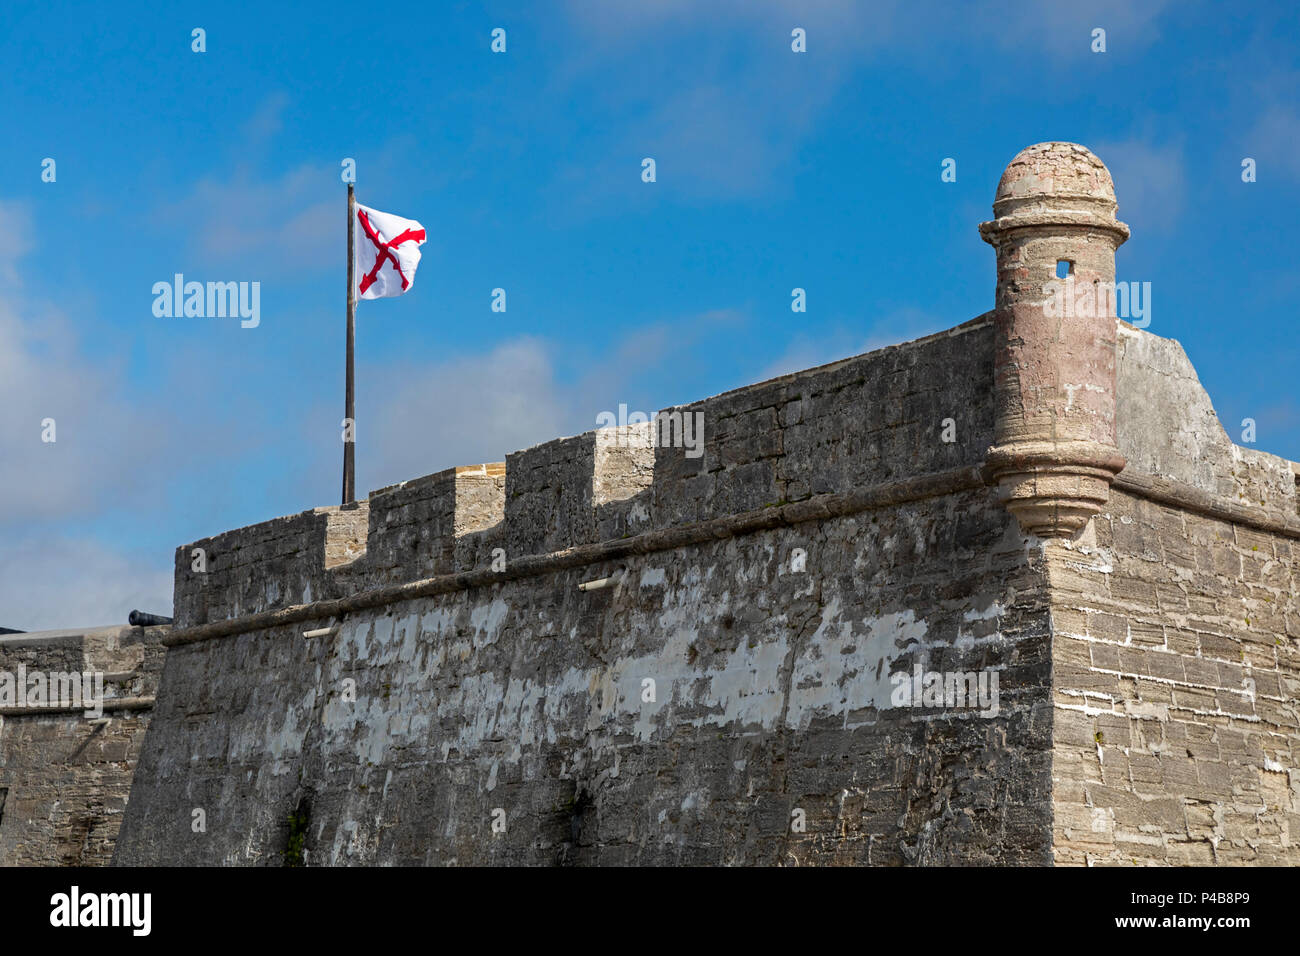 St. Augustine, Florida - Castillo de San Marcos National Monument. Die spanische gebaut Das fort Im späten 17. Jahrhundert. Es wurde später von Briti belegt Stockfoto